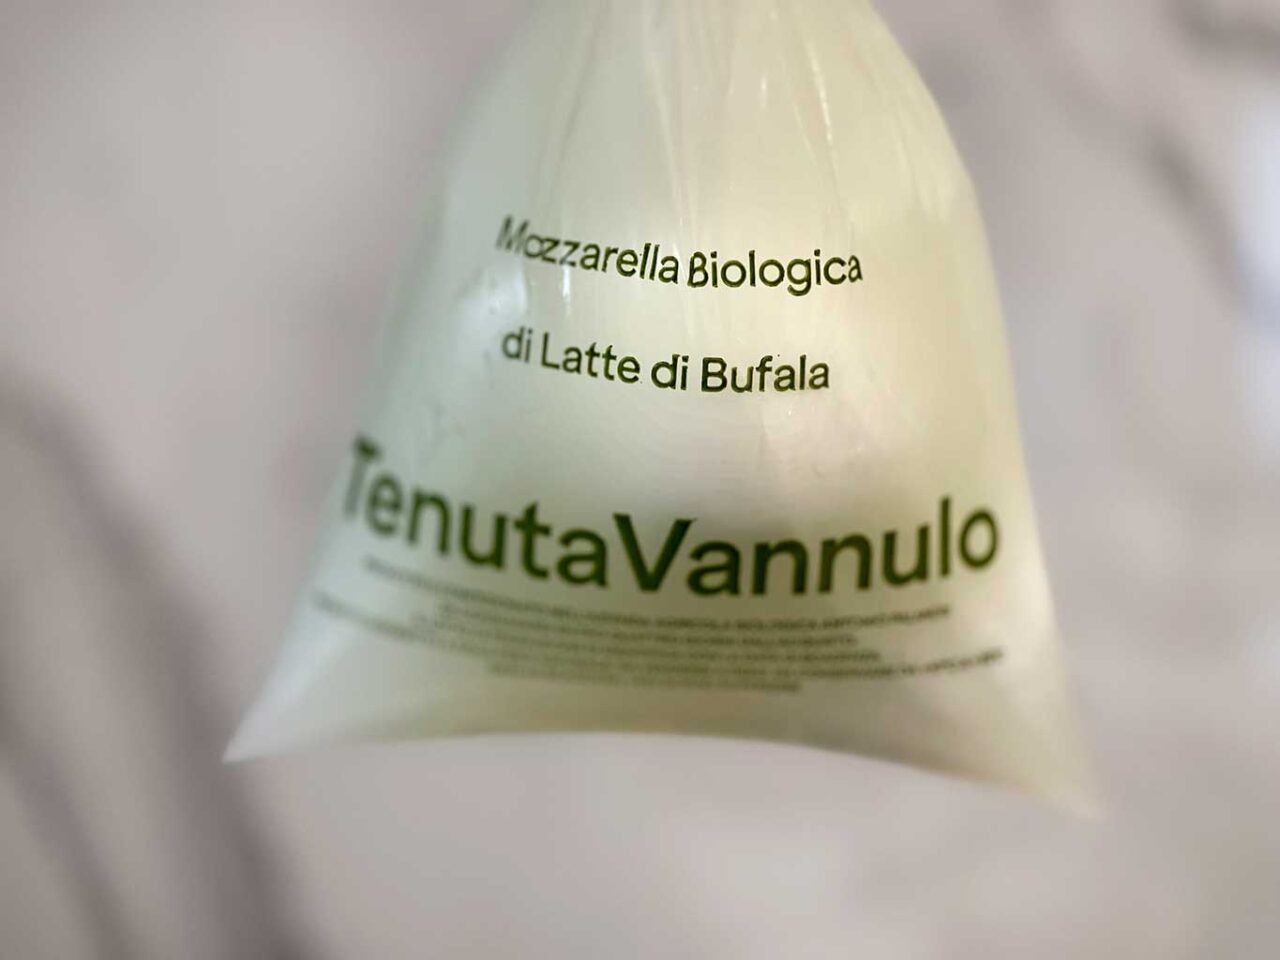 Vannulo vince agli ottavi del Campionato della Mozzarella di Bufala 2023